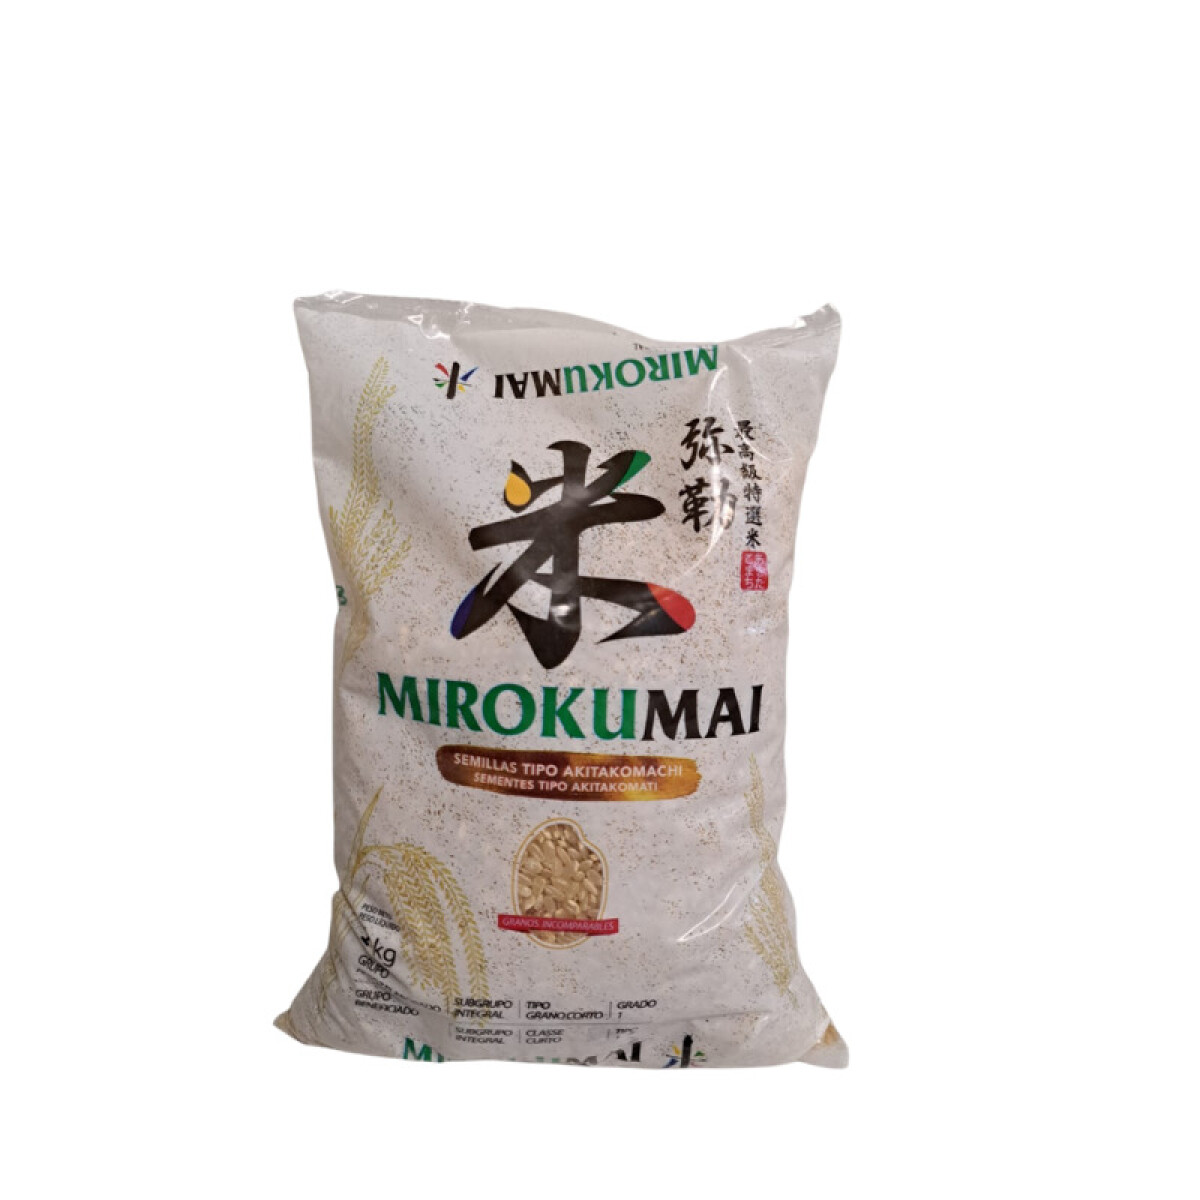 Arroz para sushi Mirokumai - 1 kg 